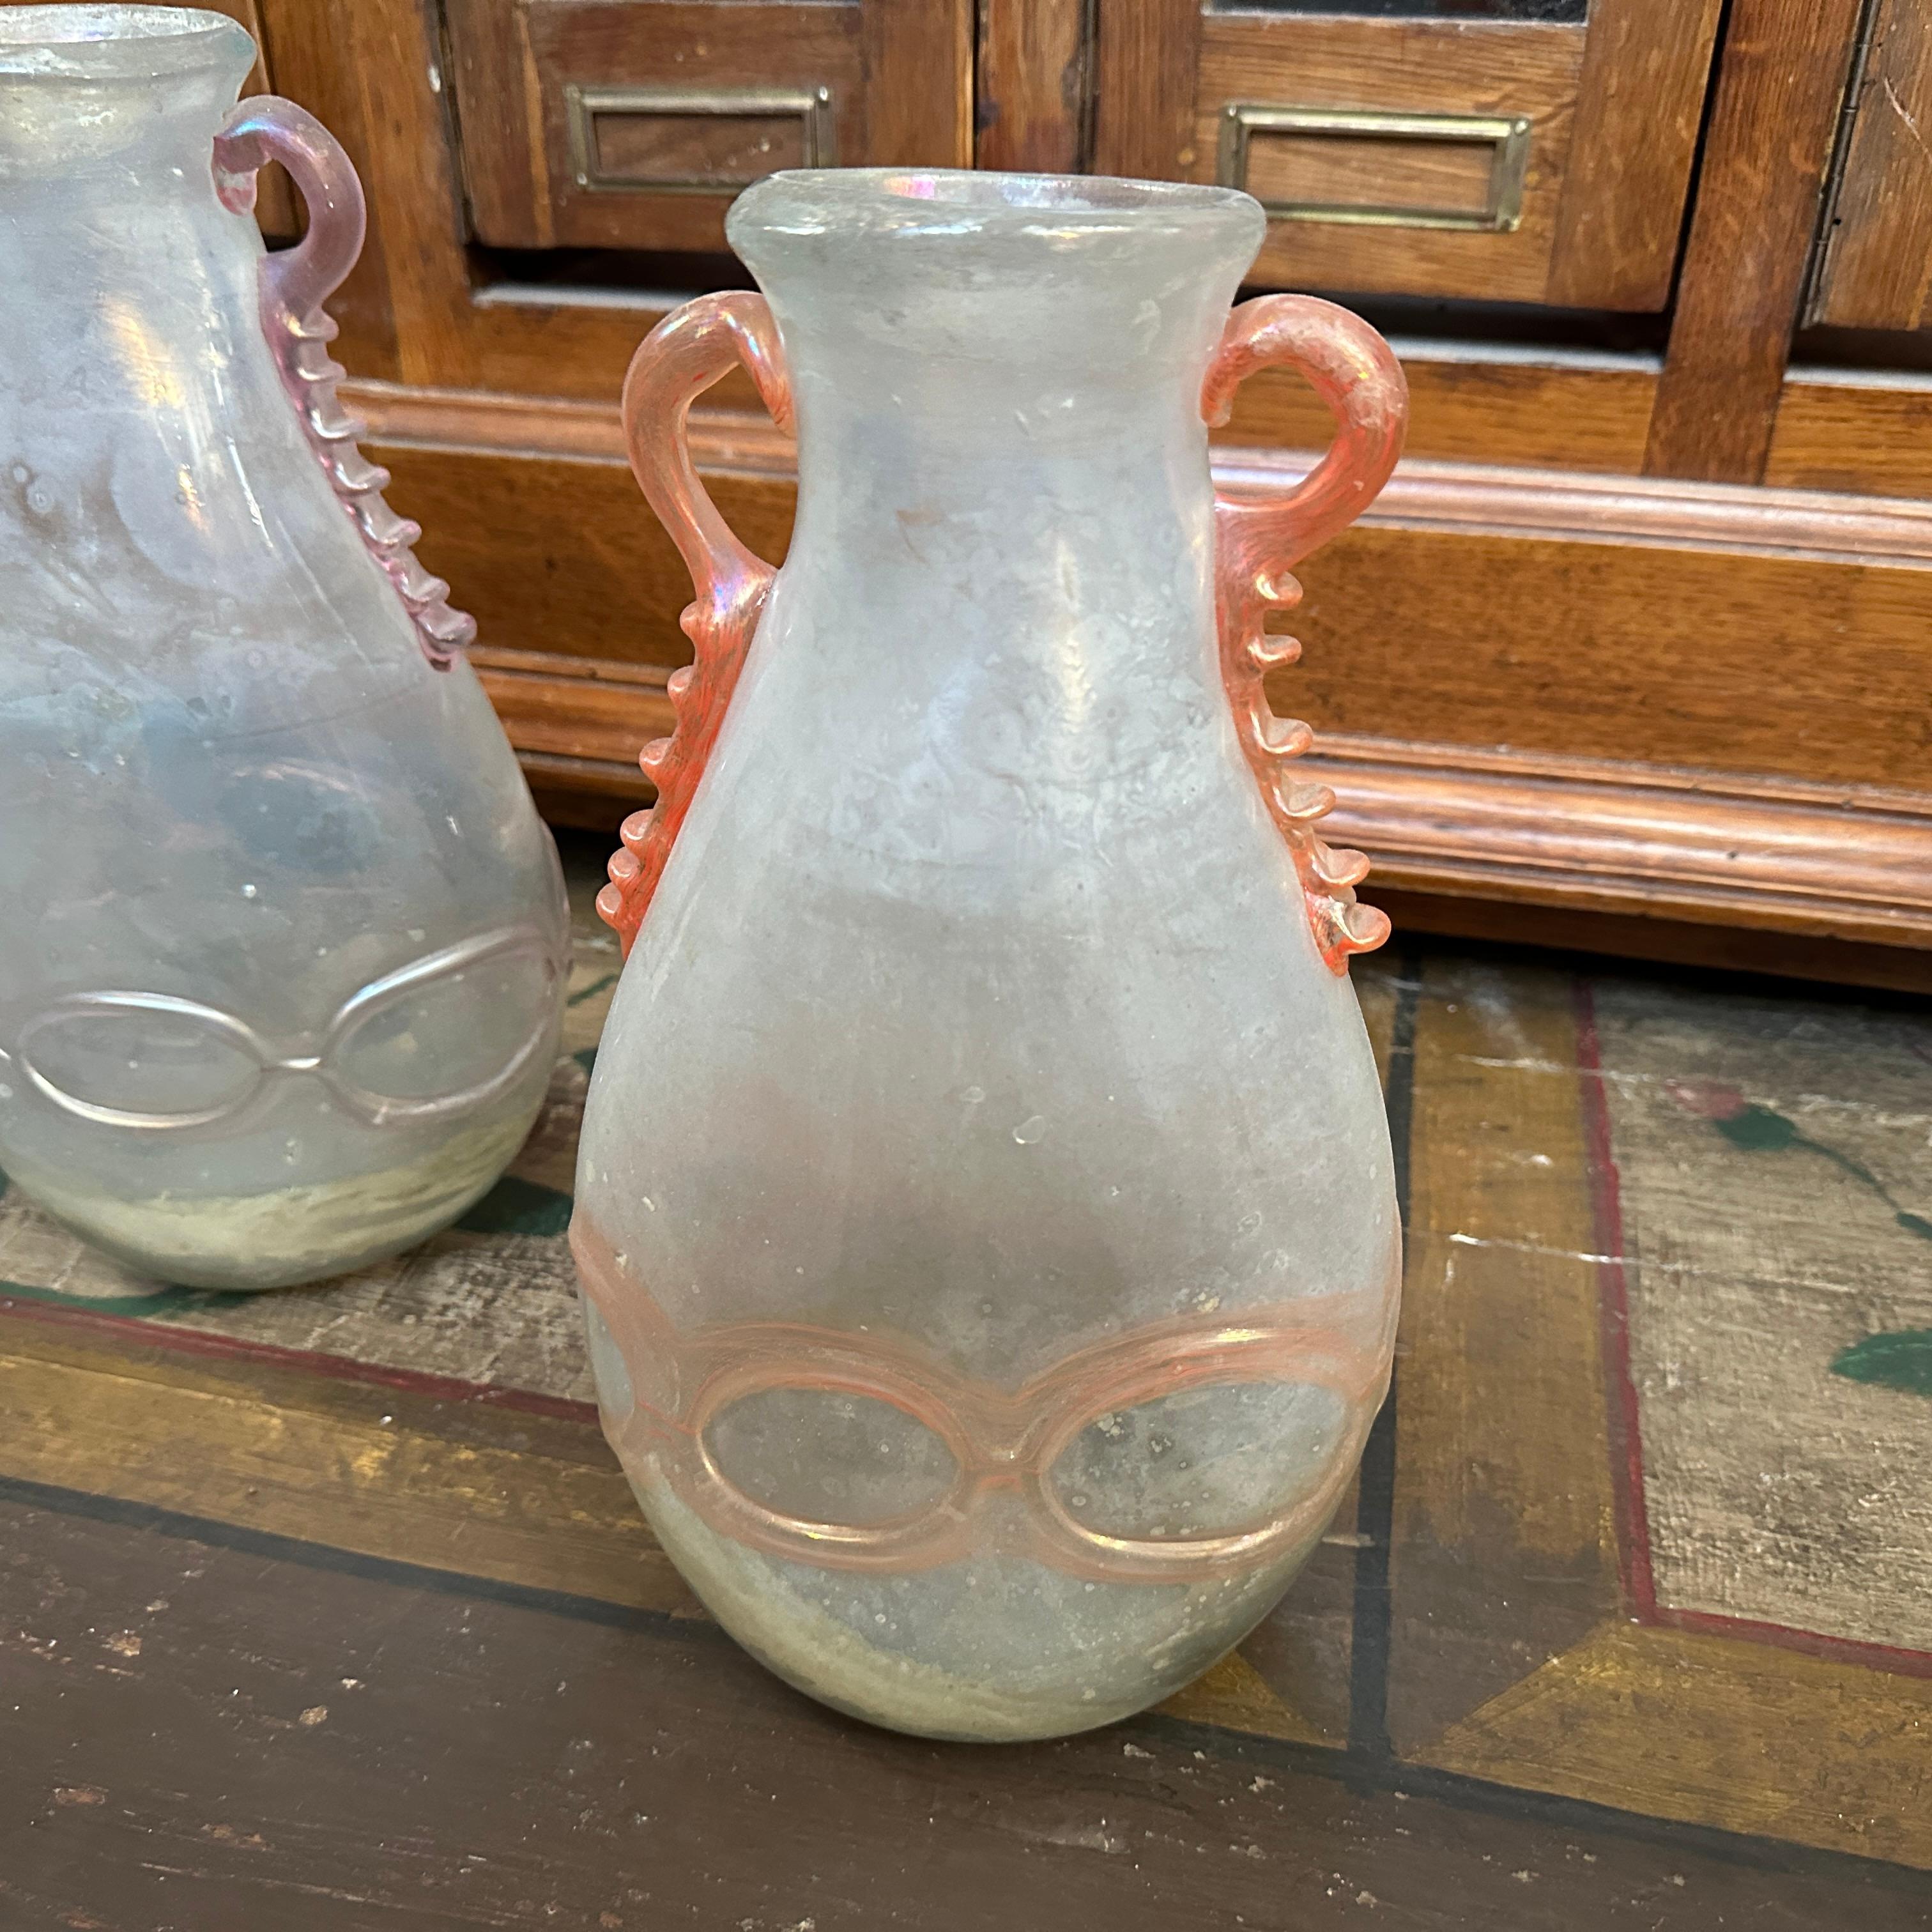 Ces deux vases en verre de Murano illustrent l'élégance et la sophistication artistique de la verrerie italienne au milieu du XXe siècle.
Attribués à Cenedese, un prestigieux studio de verre de Murano connu pour ses techniques innovantes et son